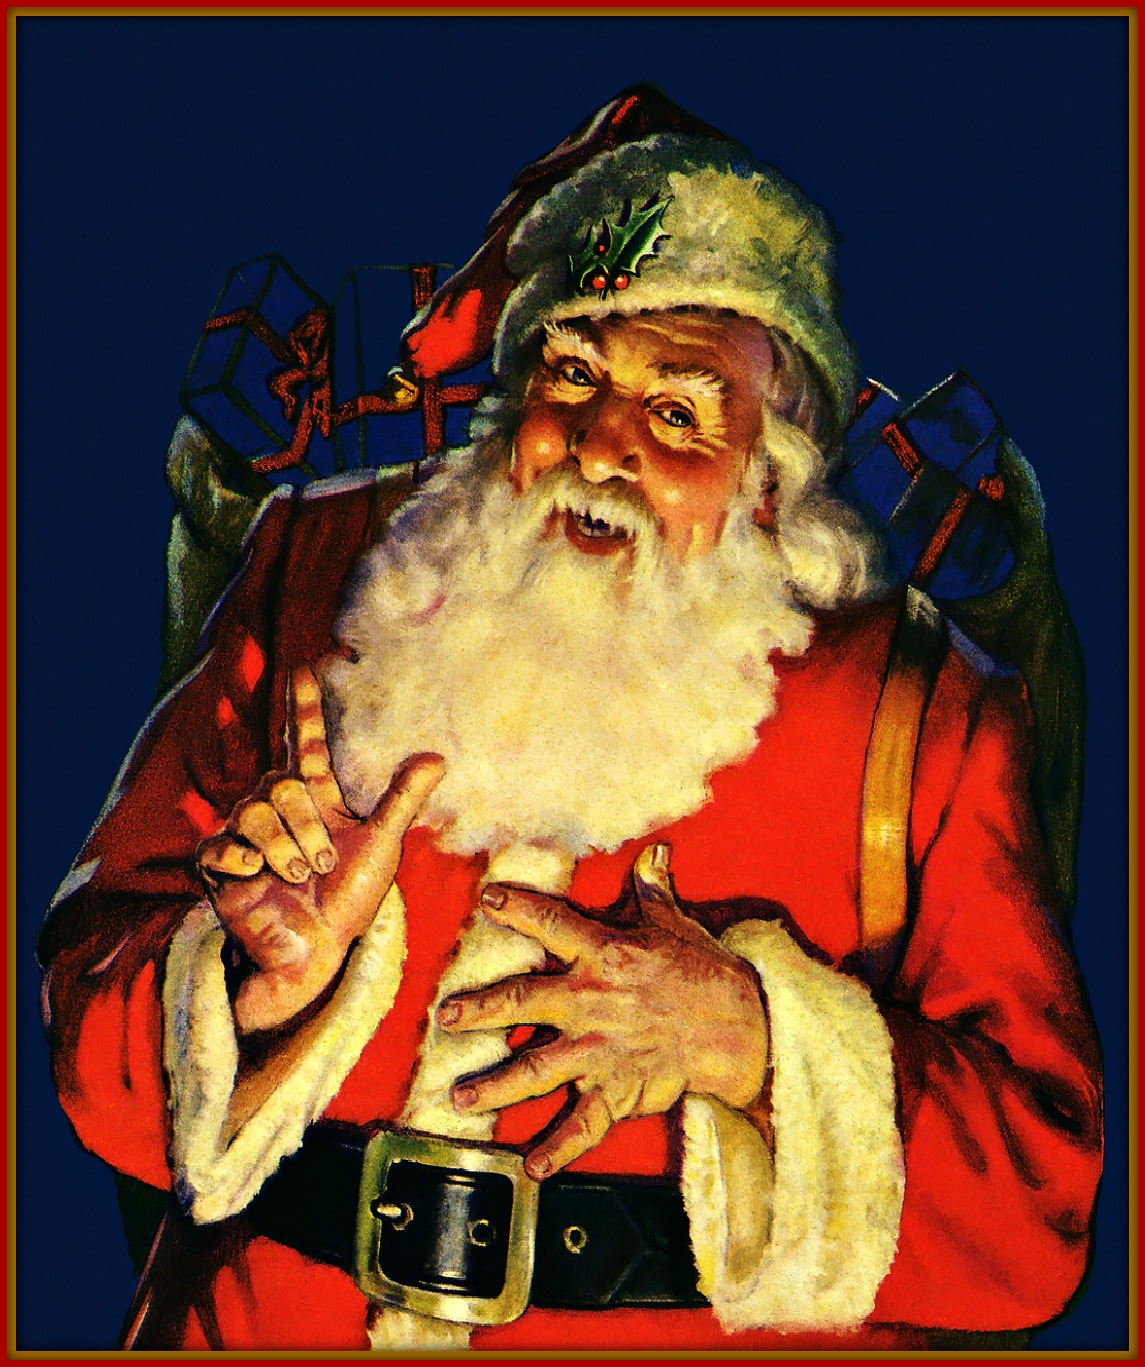 Santa’s Warning Letter To Naughty Children